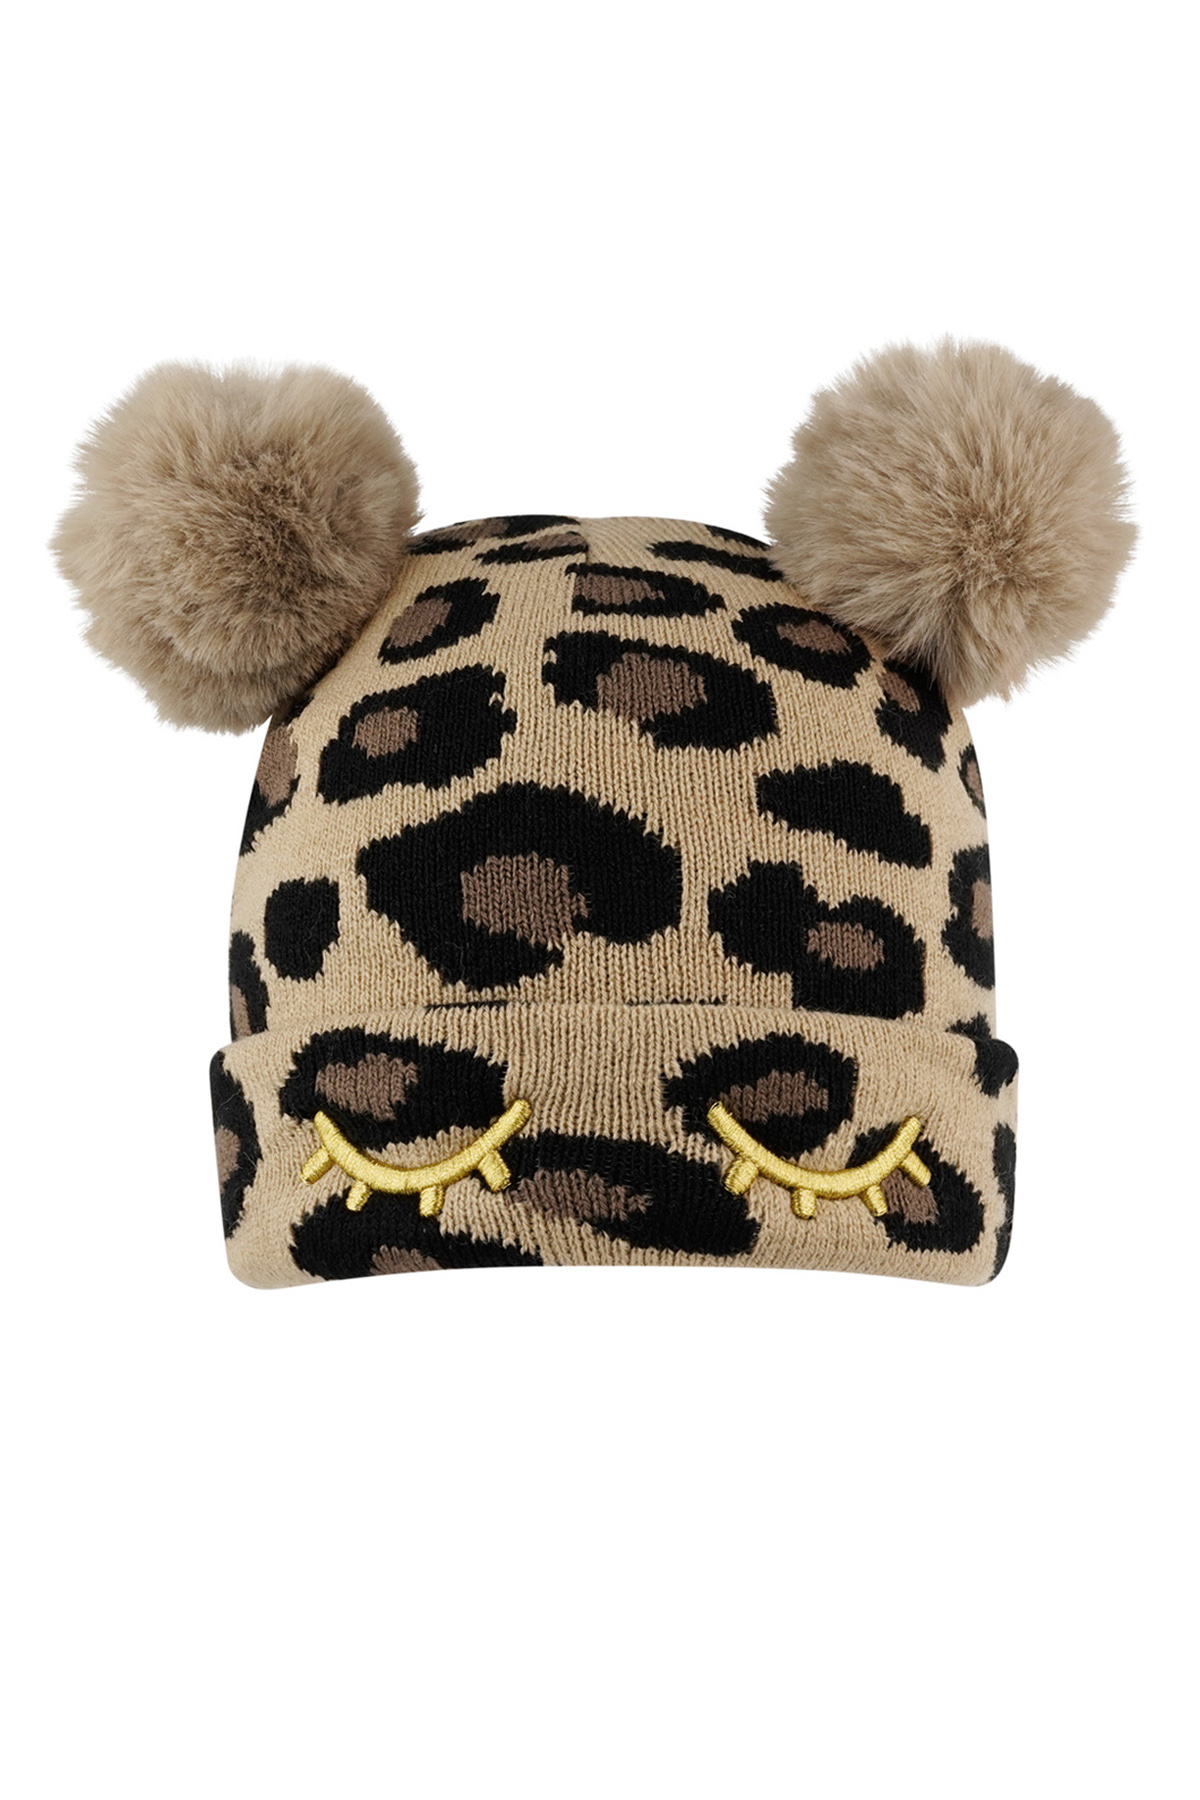 Adulte - bonnet imprimé léopard avec boules